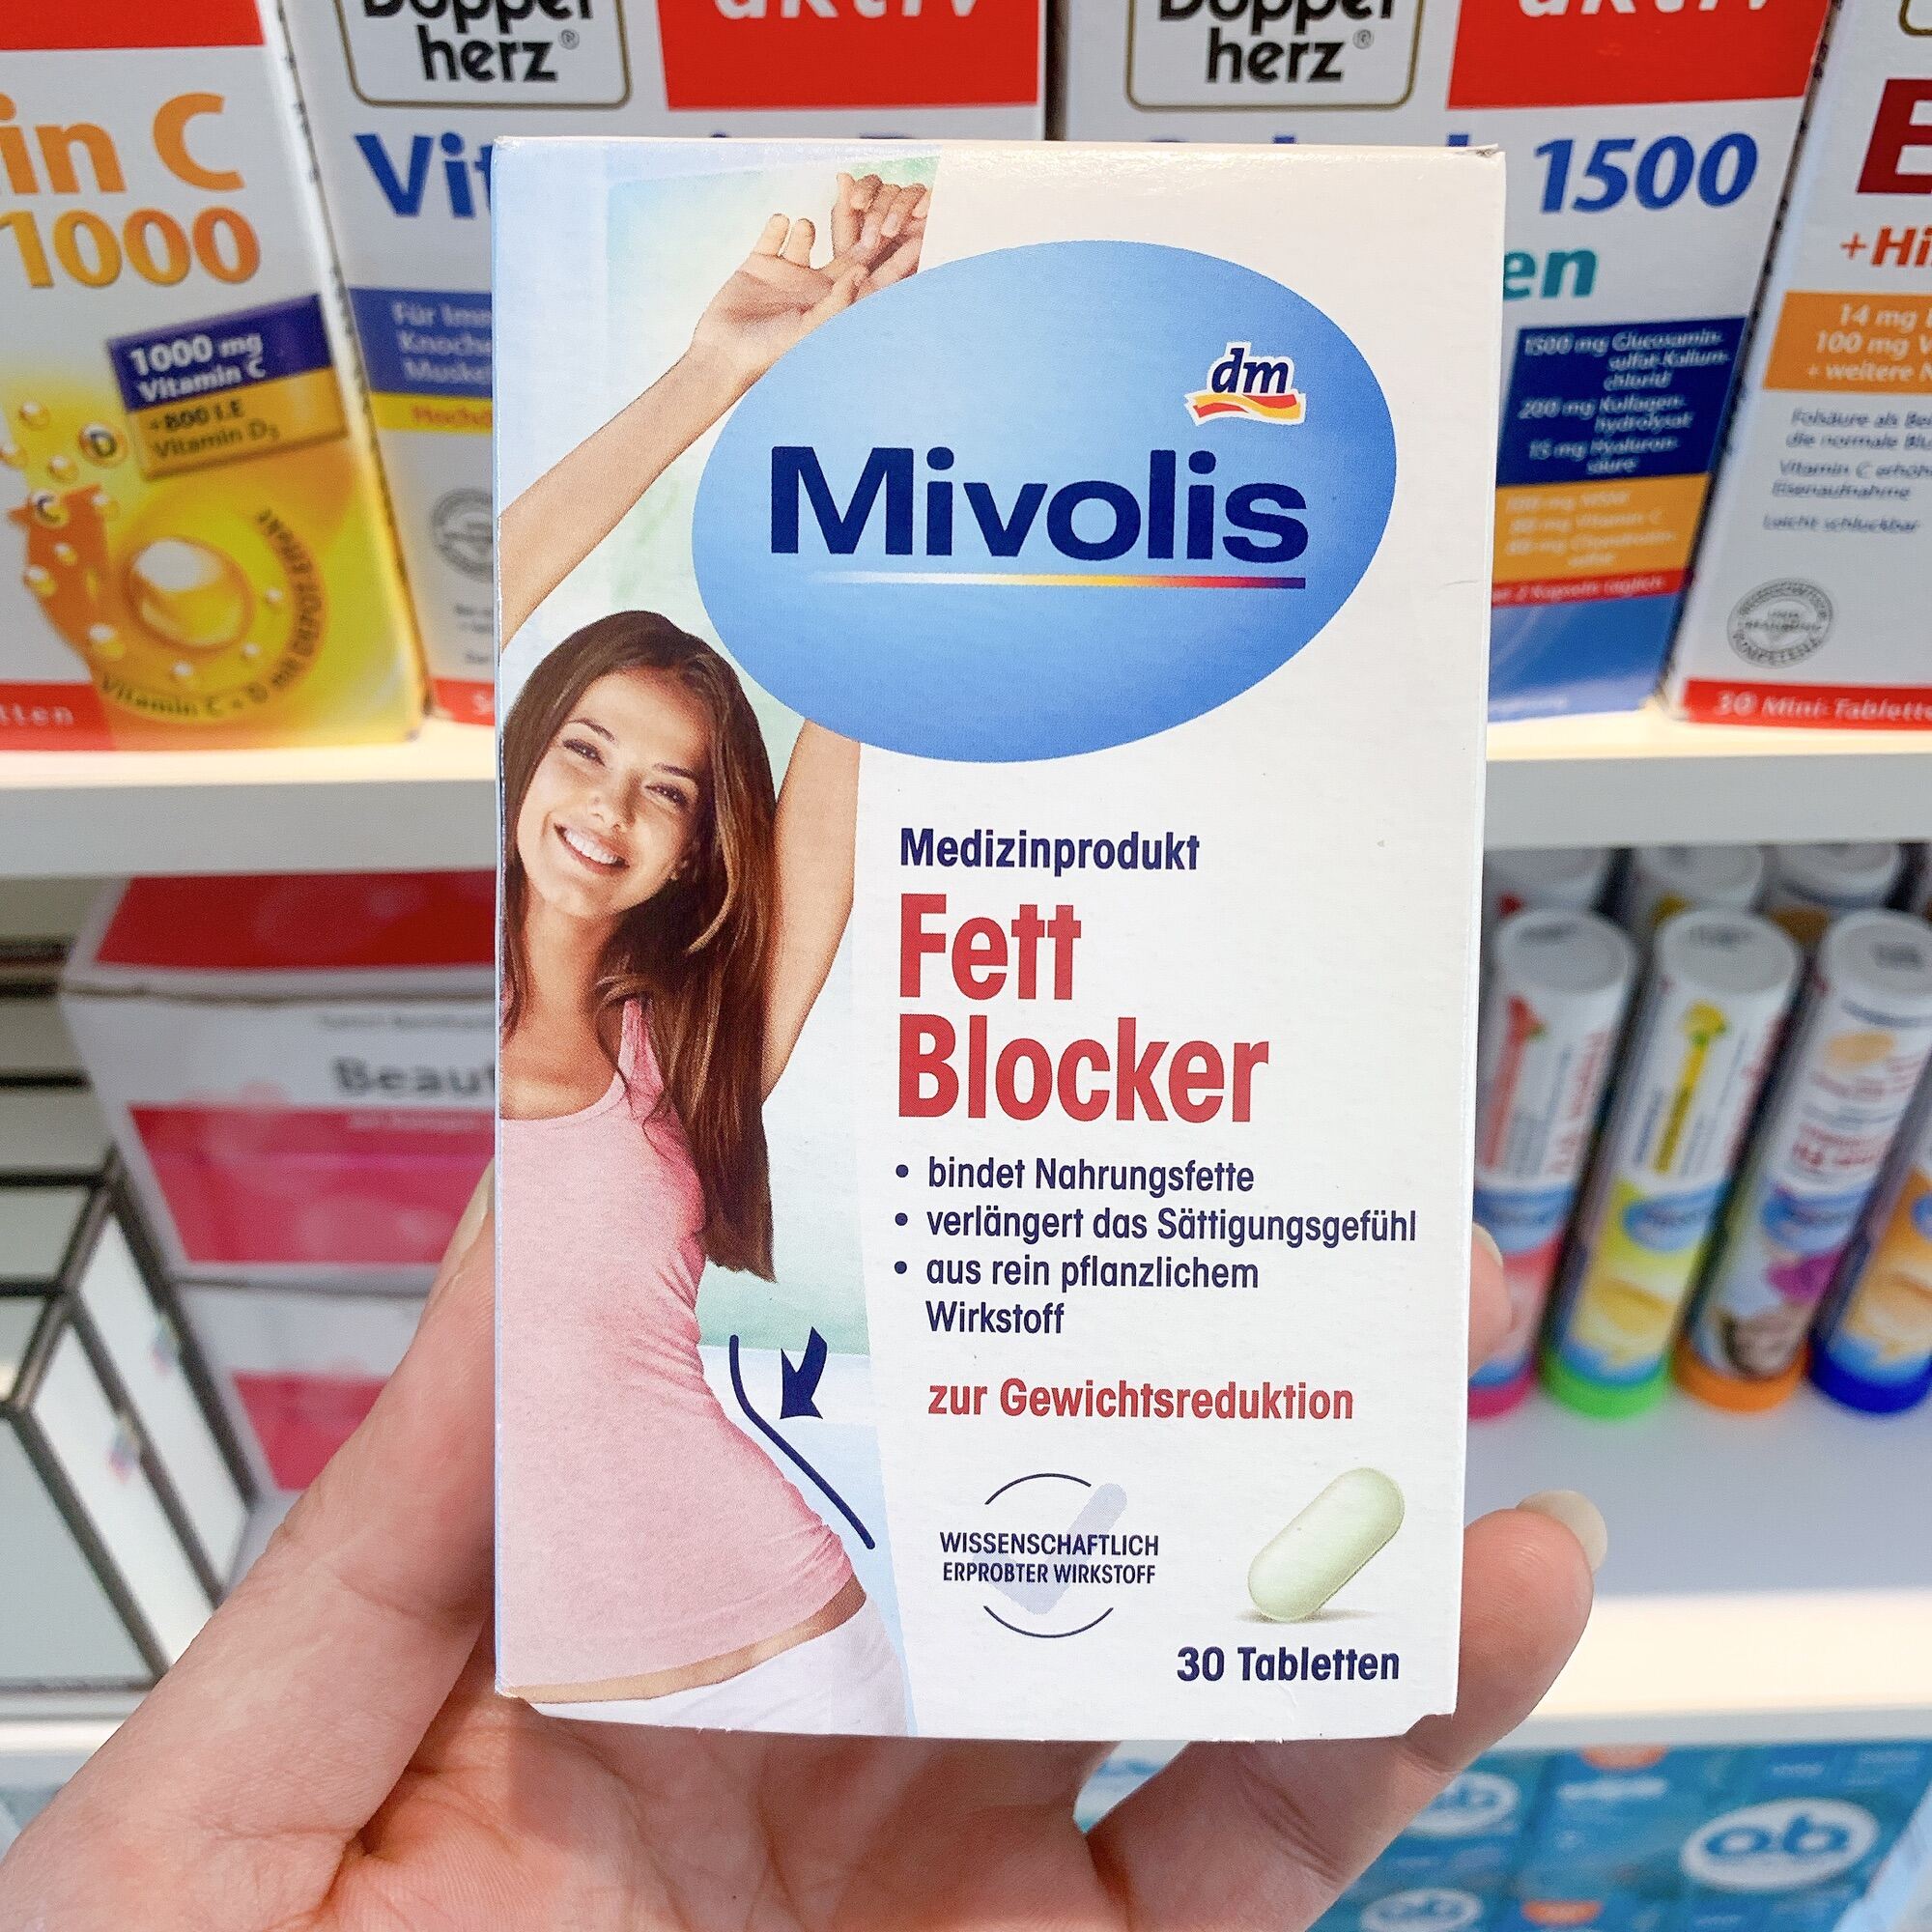 Viên uống giảm cân Fett Blocker Mivolis - Hộp 30Viên - Hàng nội địa Đức